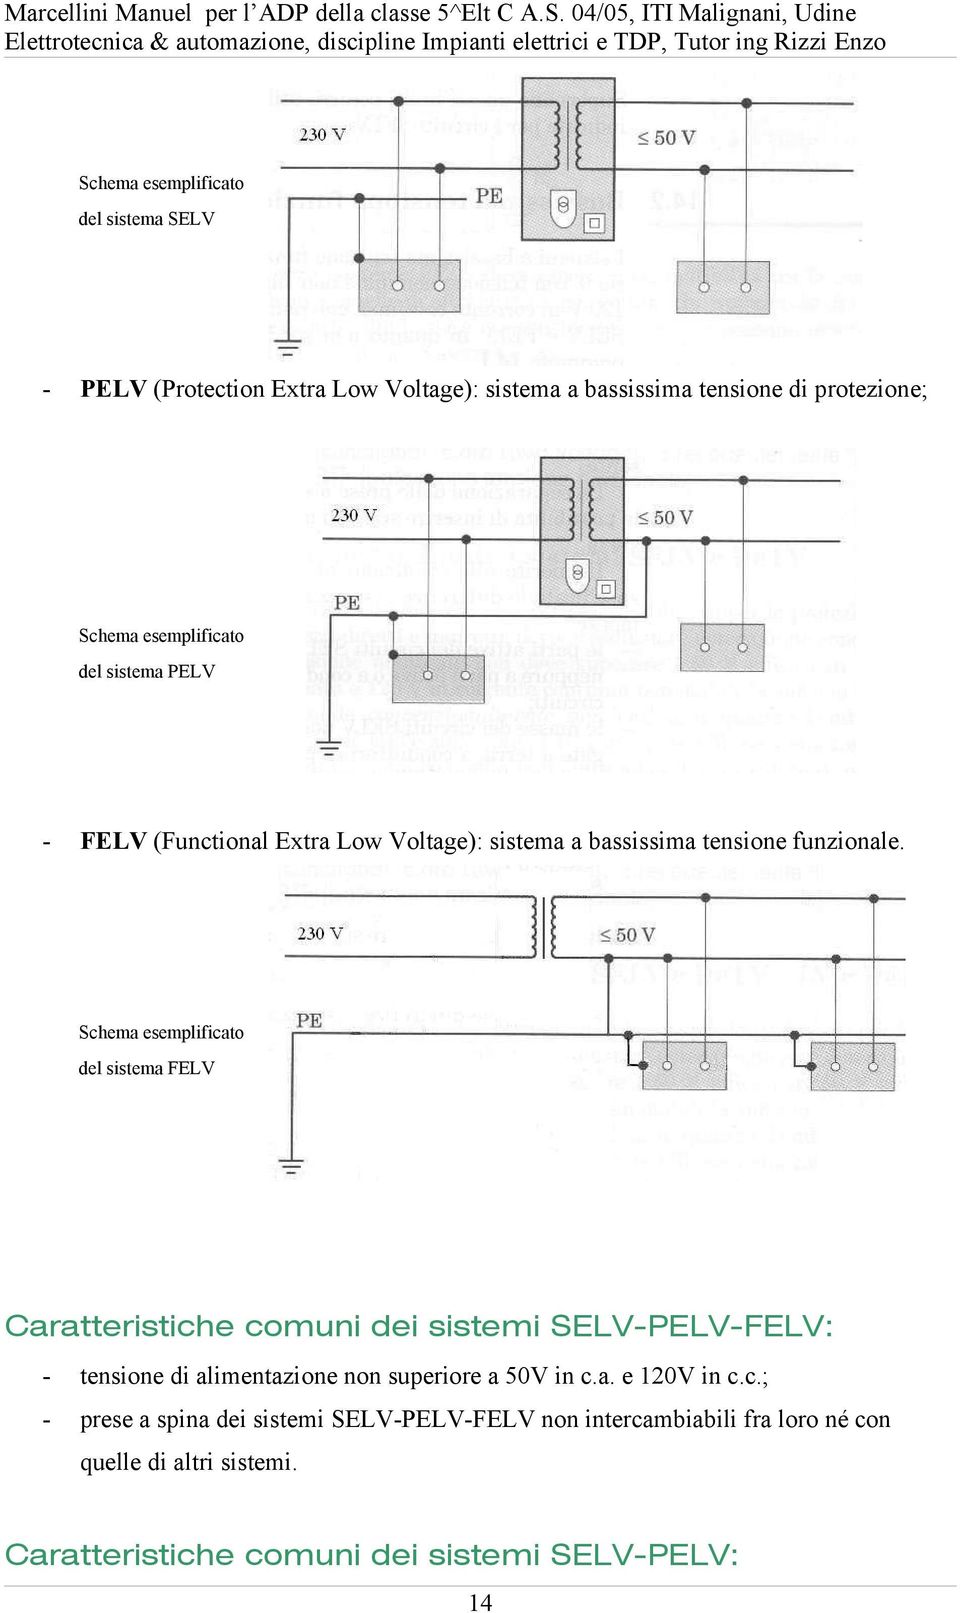 Schema esemplificato del sistema FELV Caratteristiche comuni dei sistemi SELV-PELV-FELV: - tensione di alimentazione non superiore a 50V